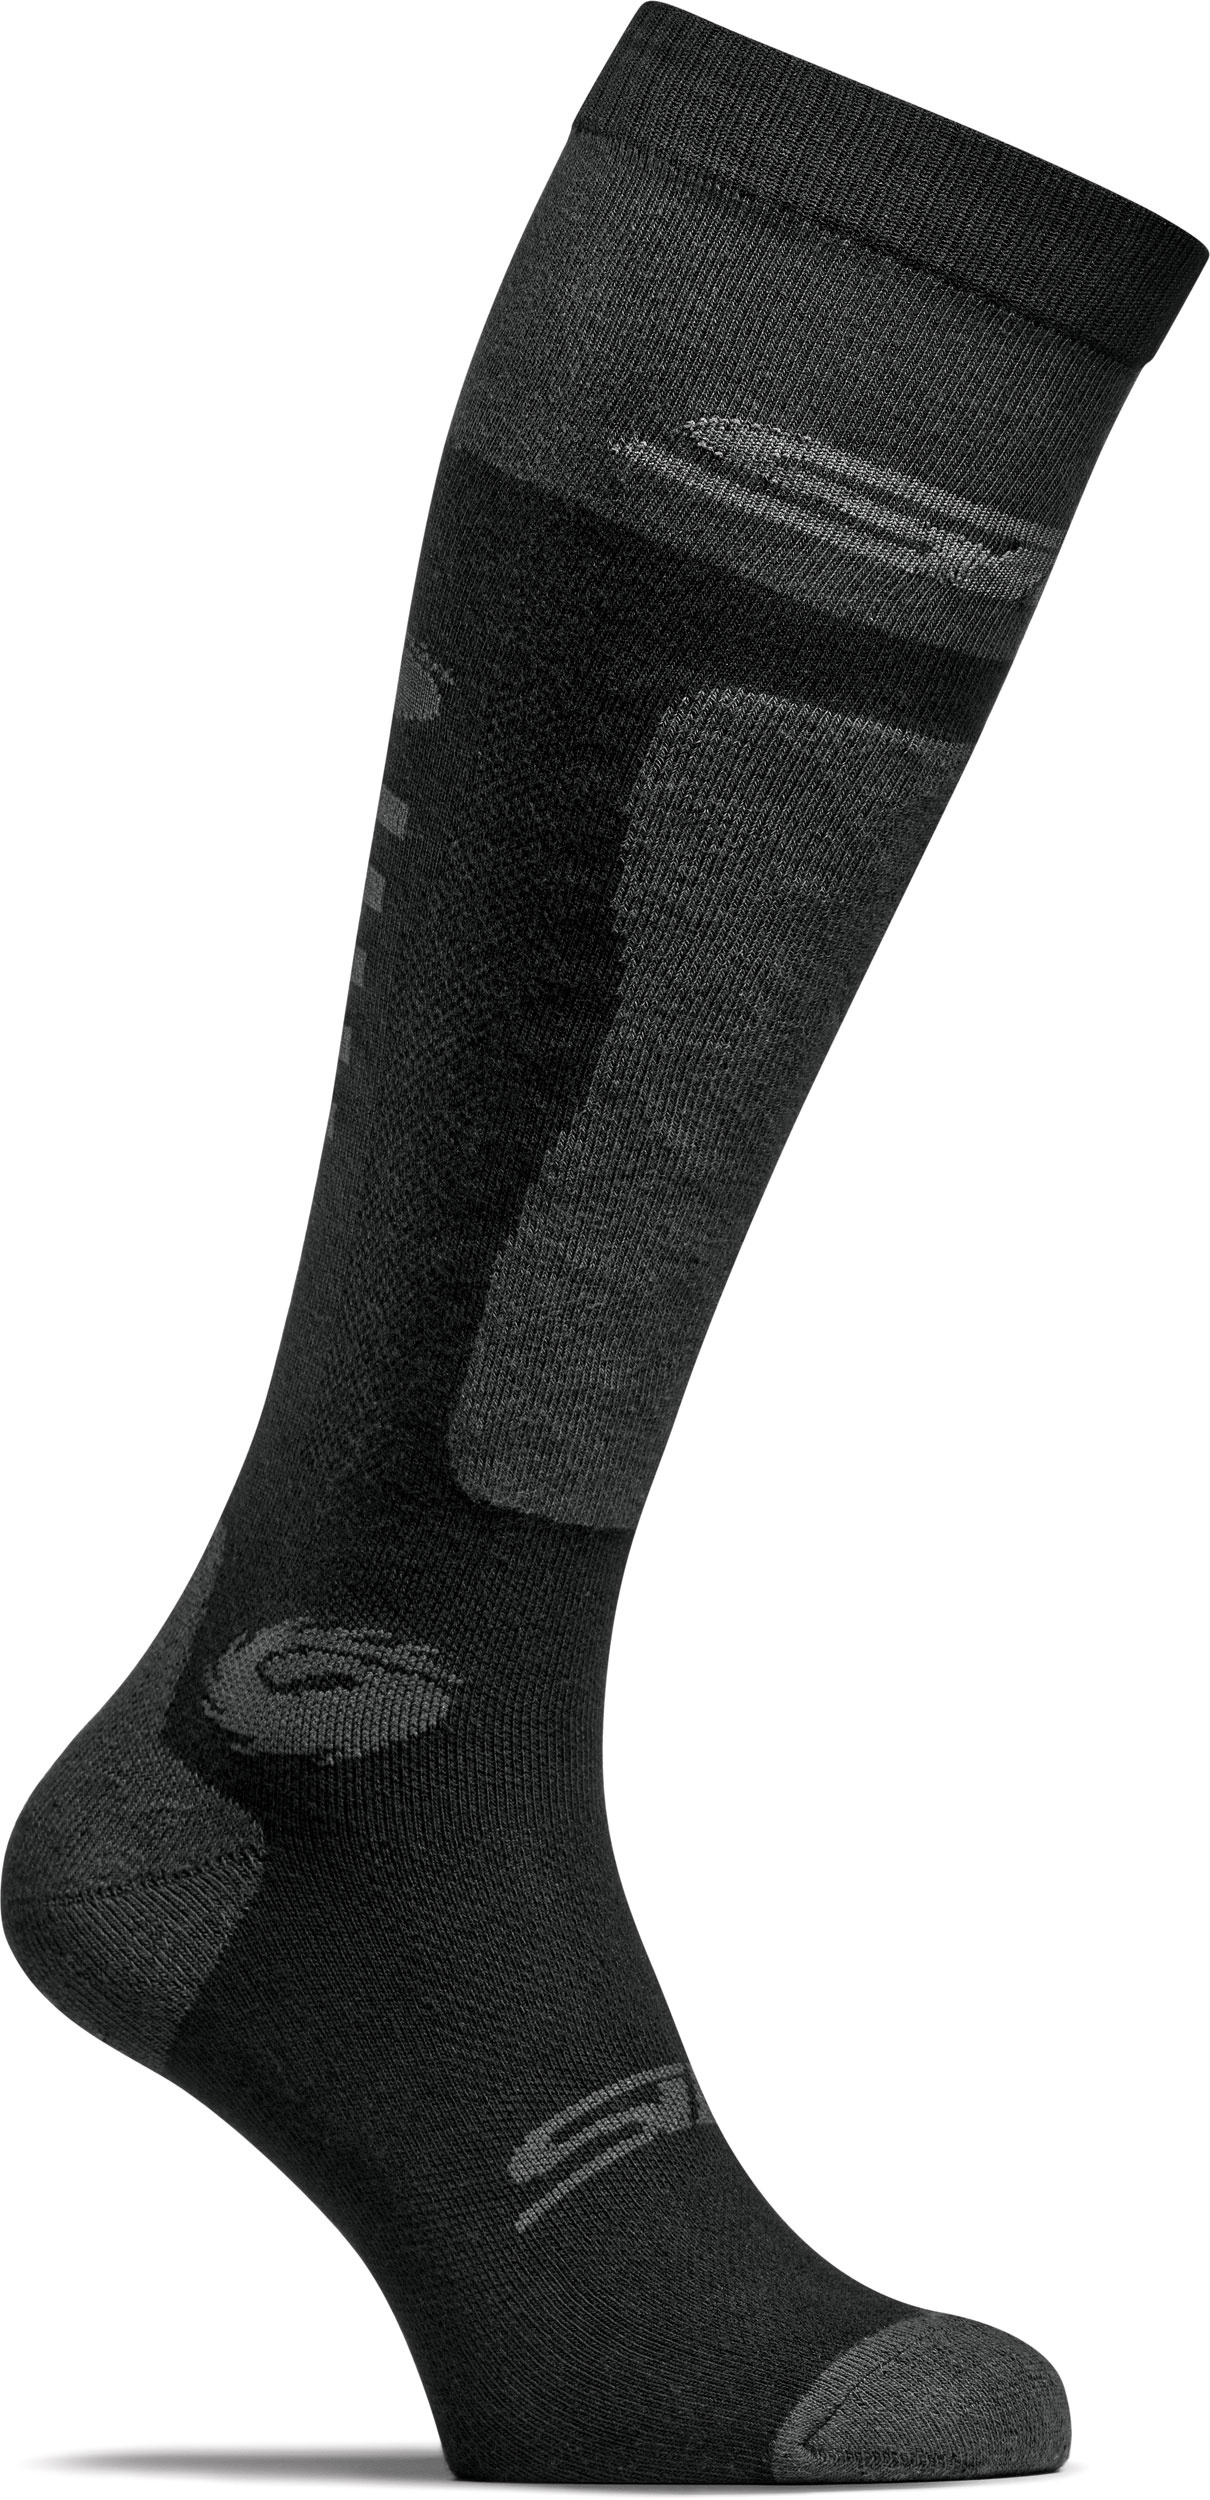 Sidi Perris Socks Black (339) L/XL - Noir - L/XL